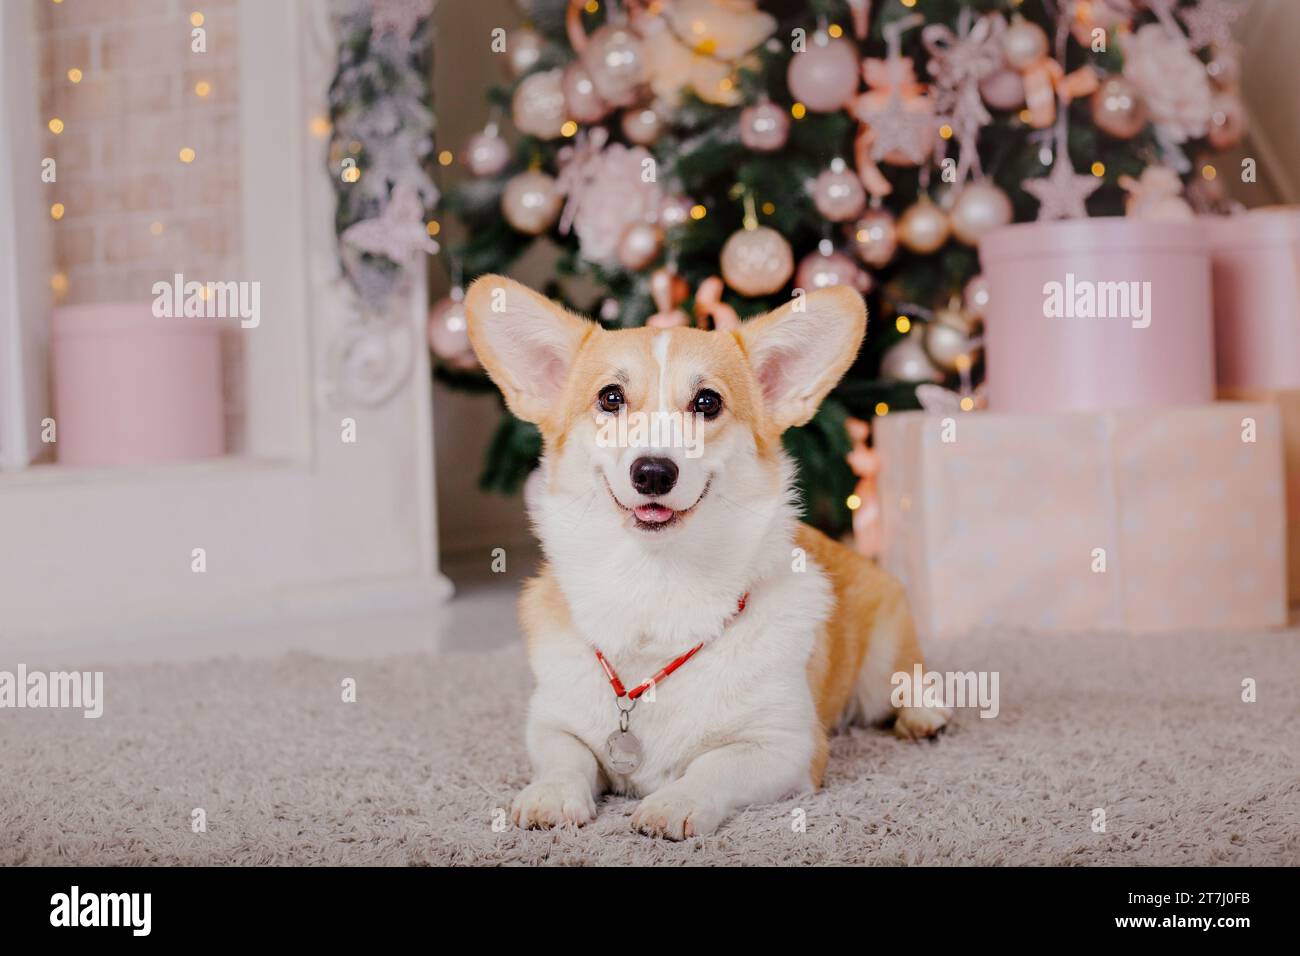 Corgi dog breed. Happy New Year, Christmas holidays and celebration. Stock Photo